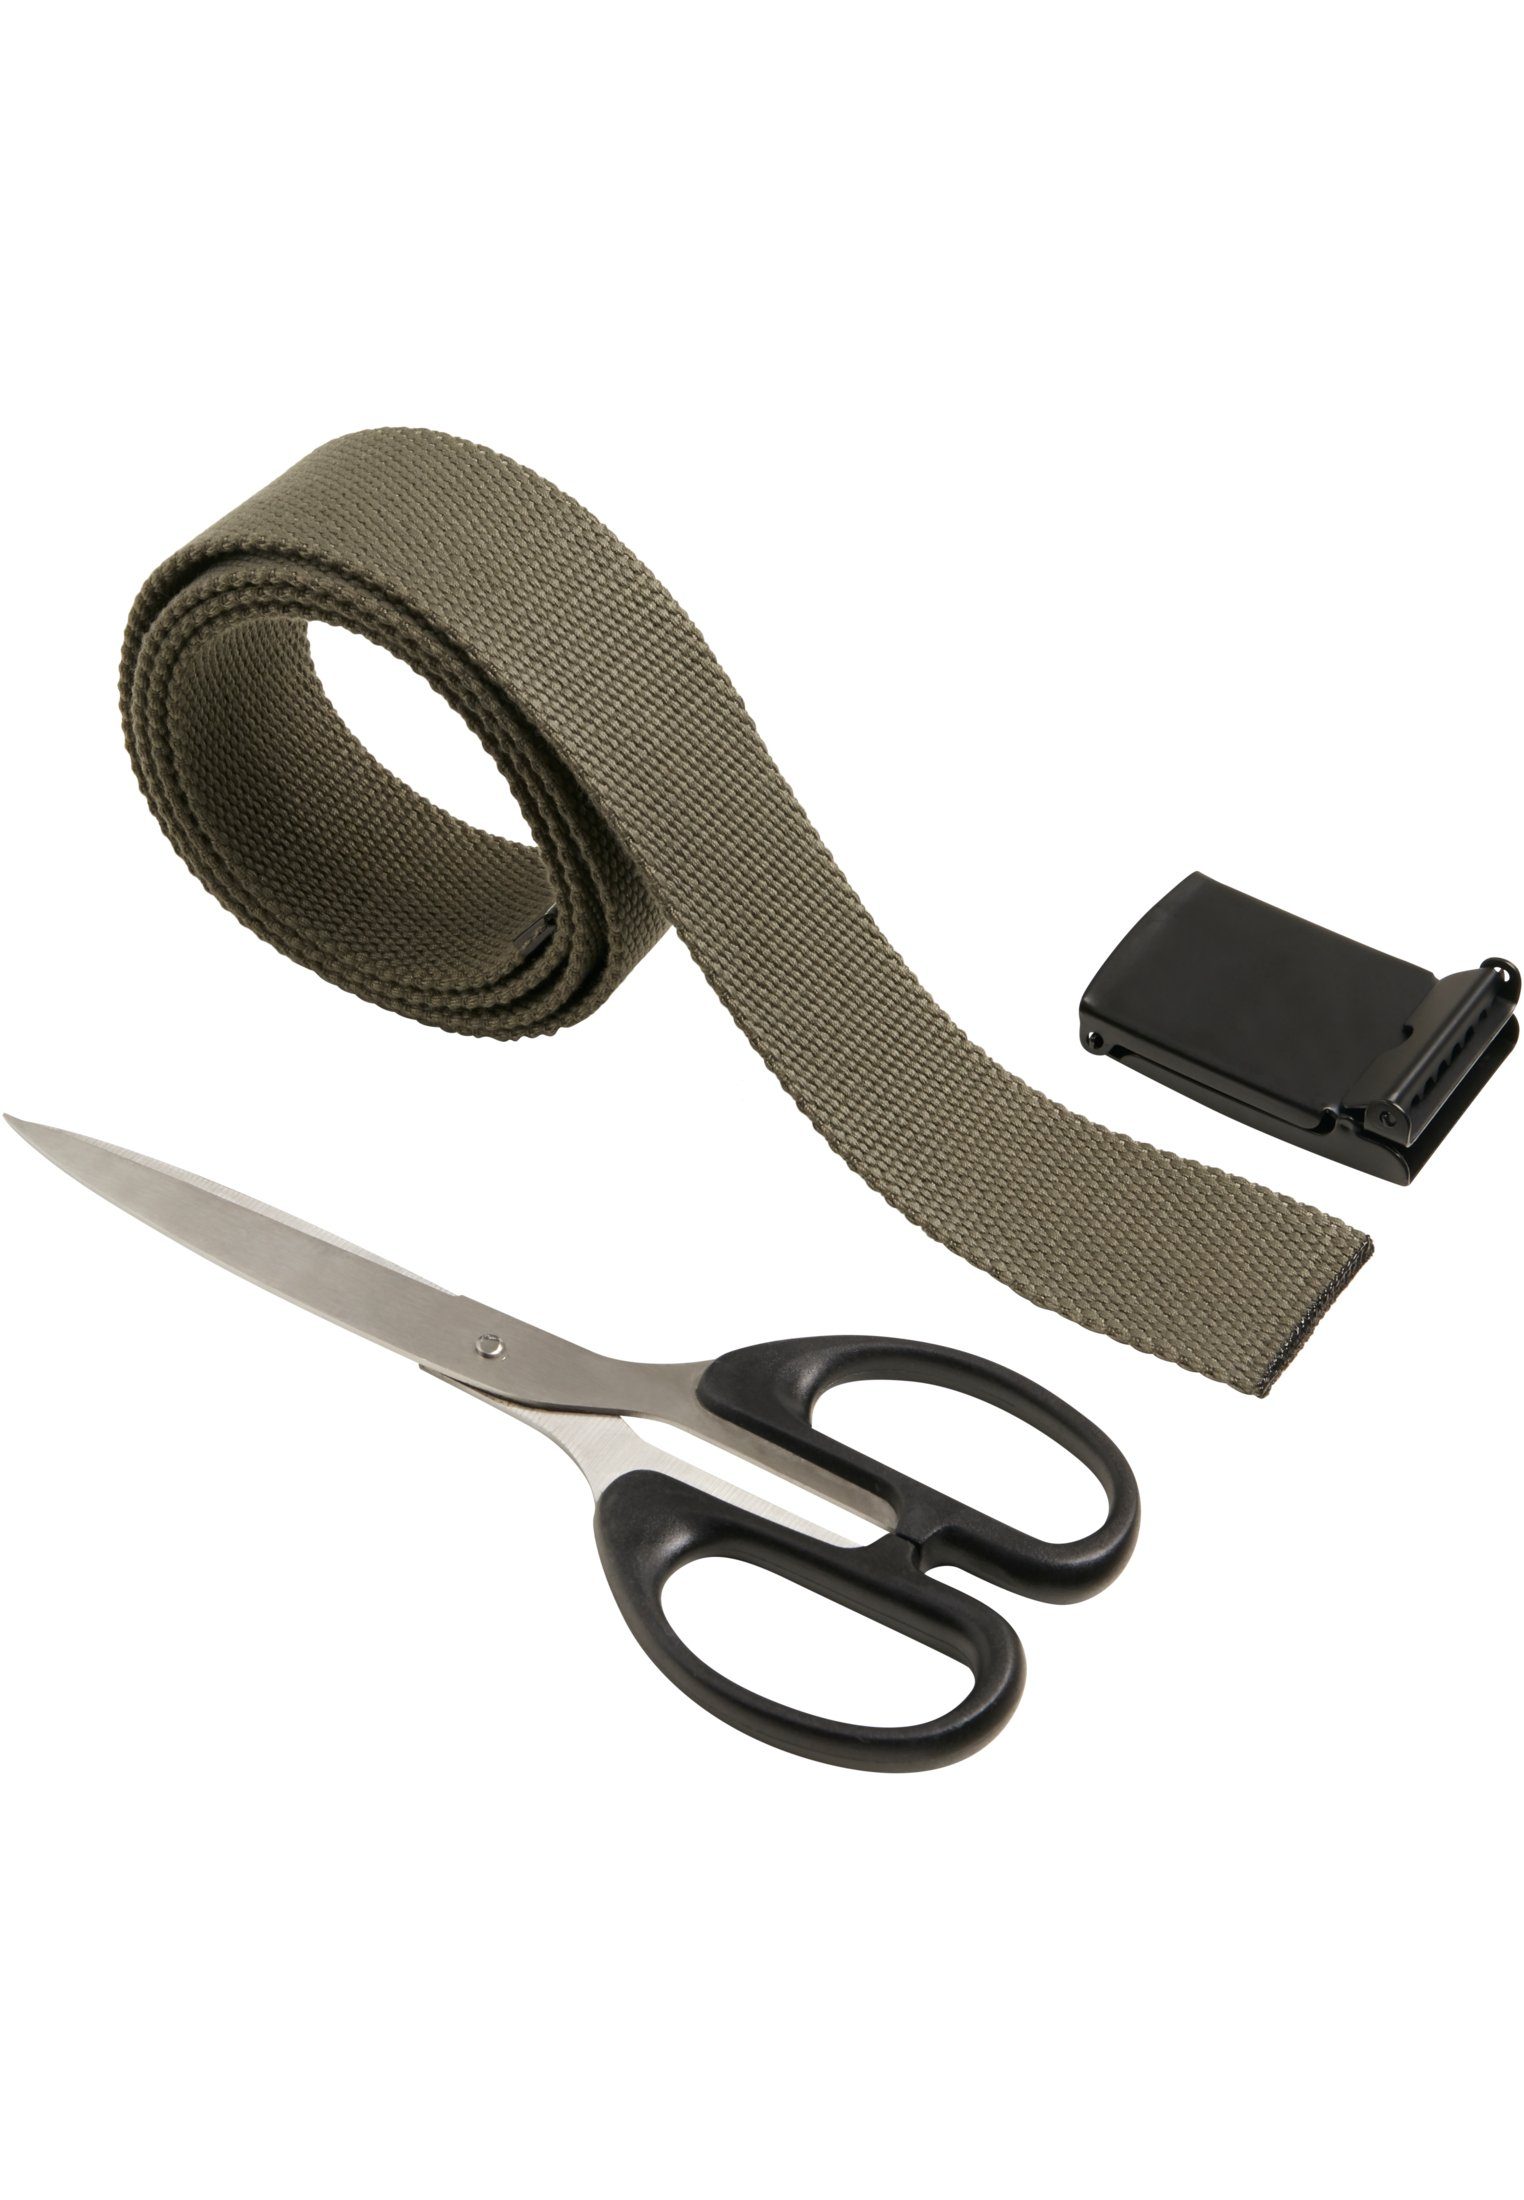 URBAN CLASSICS Belts Hüftgürtel Accessoires Canvas olive-black